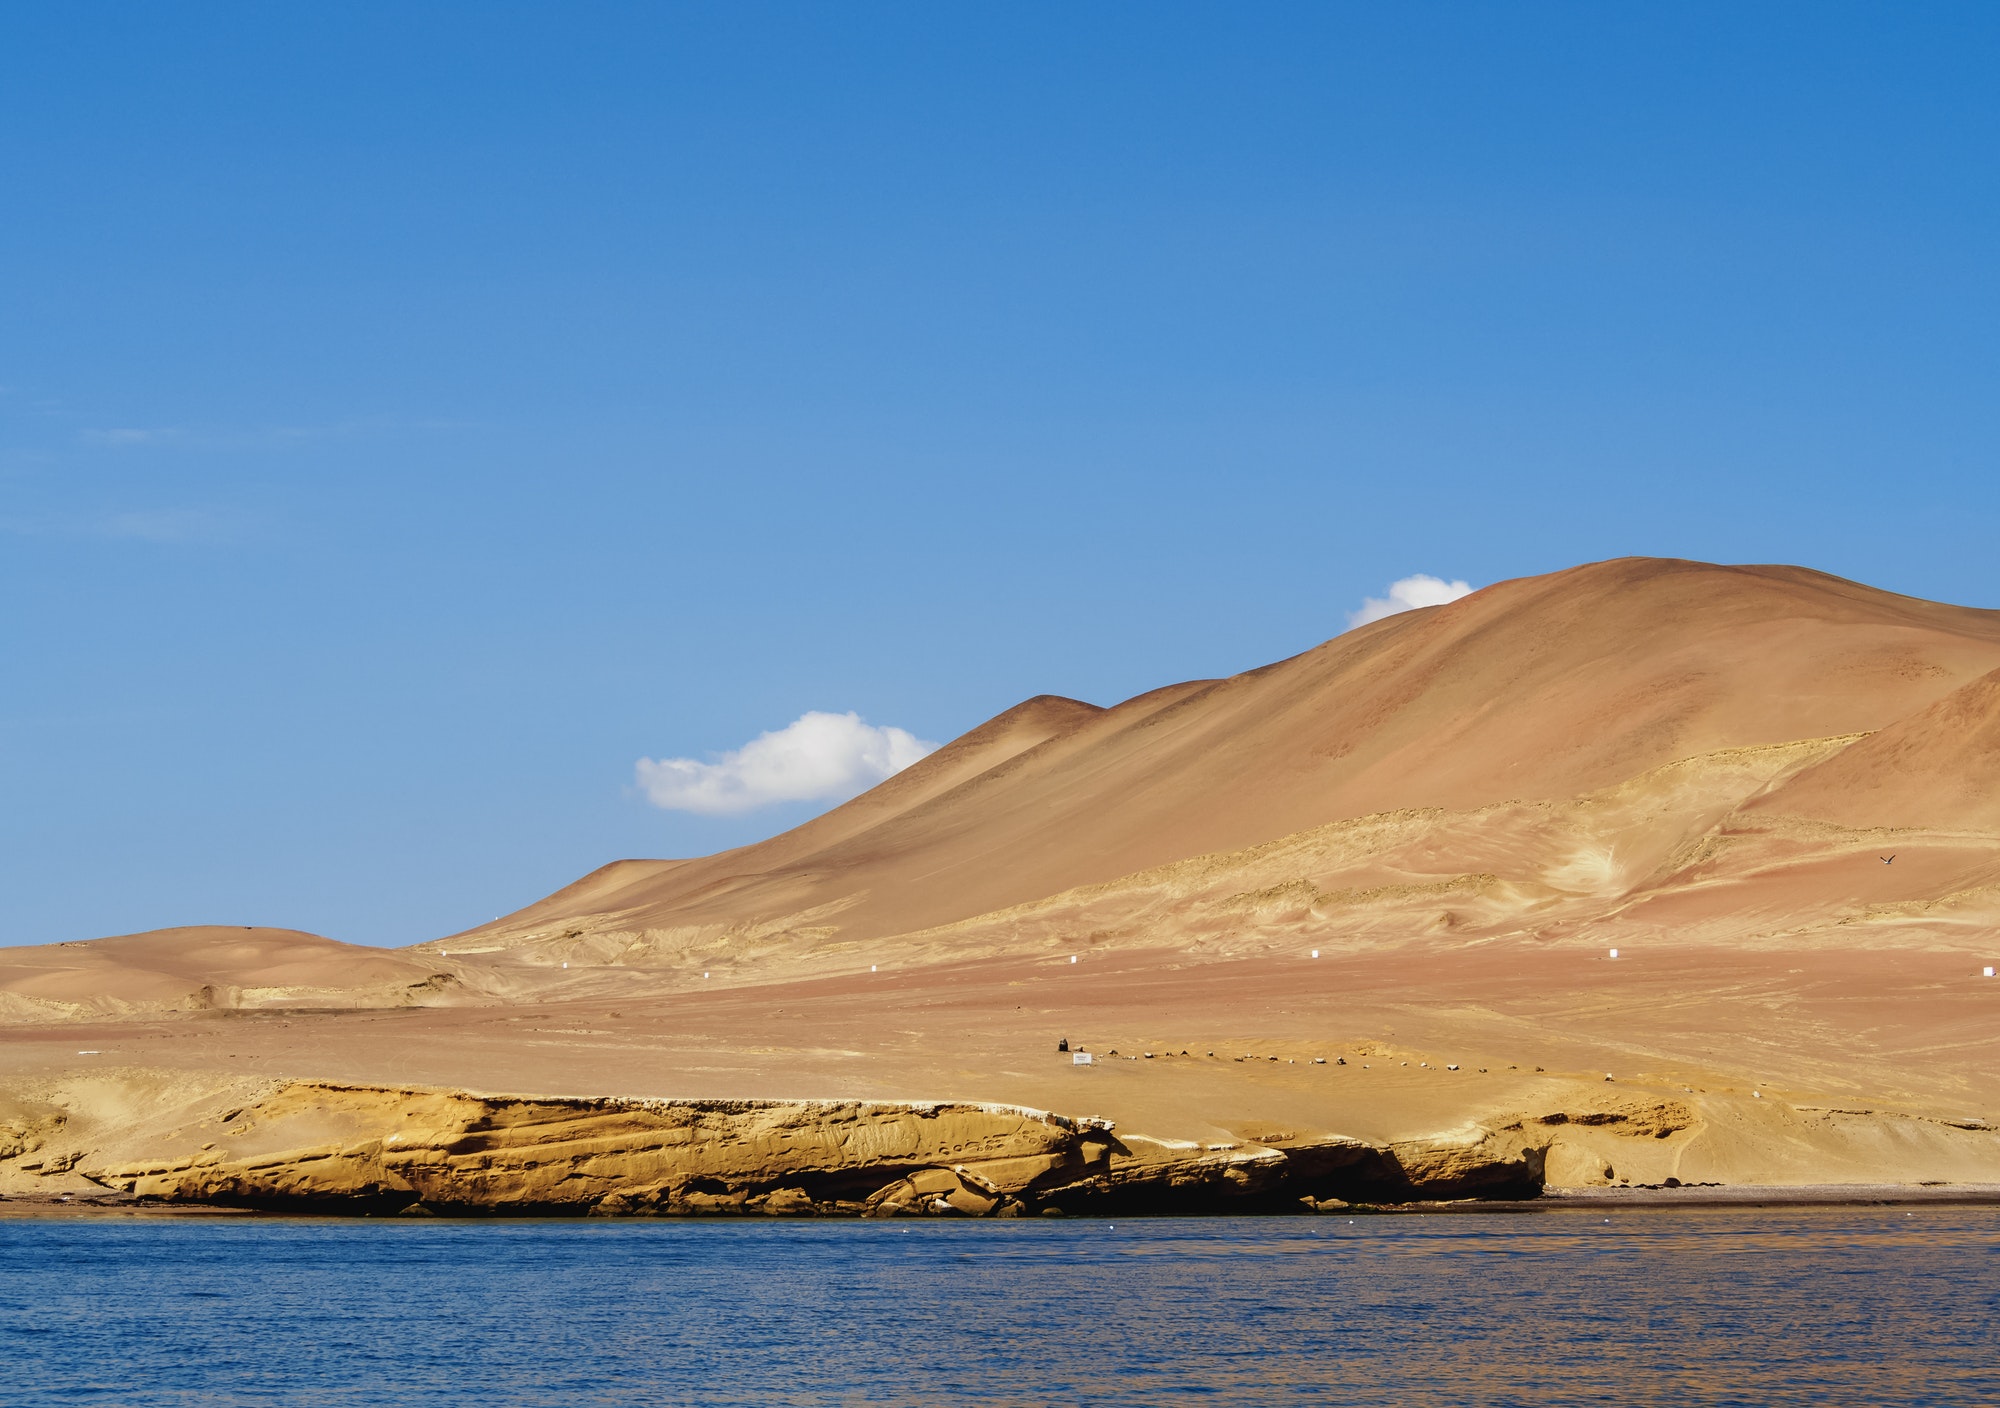 Paracas Peninsula in Peru